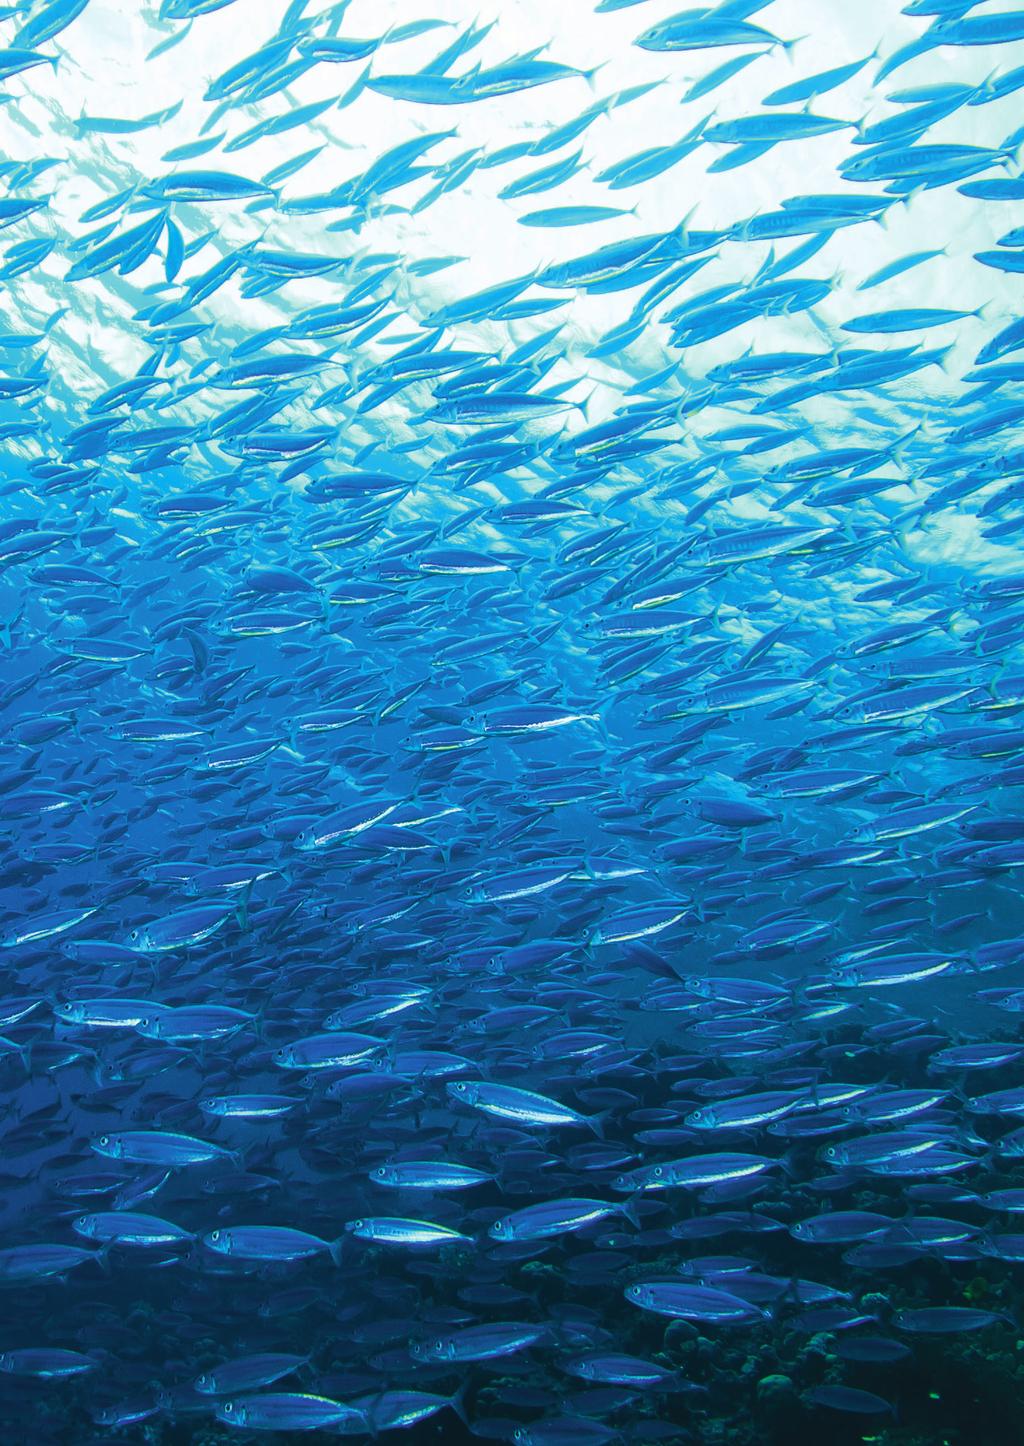 Fisch-Einkaufspolitik Stand: Dezember